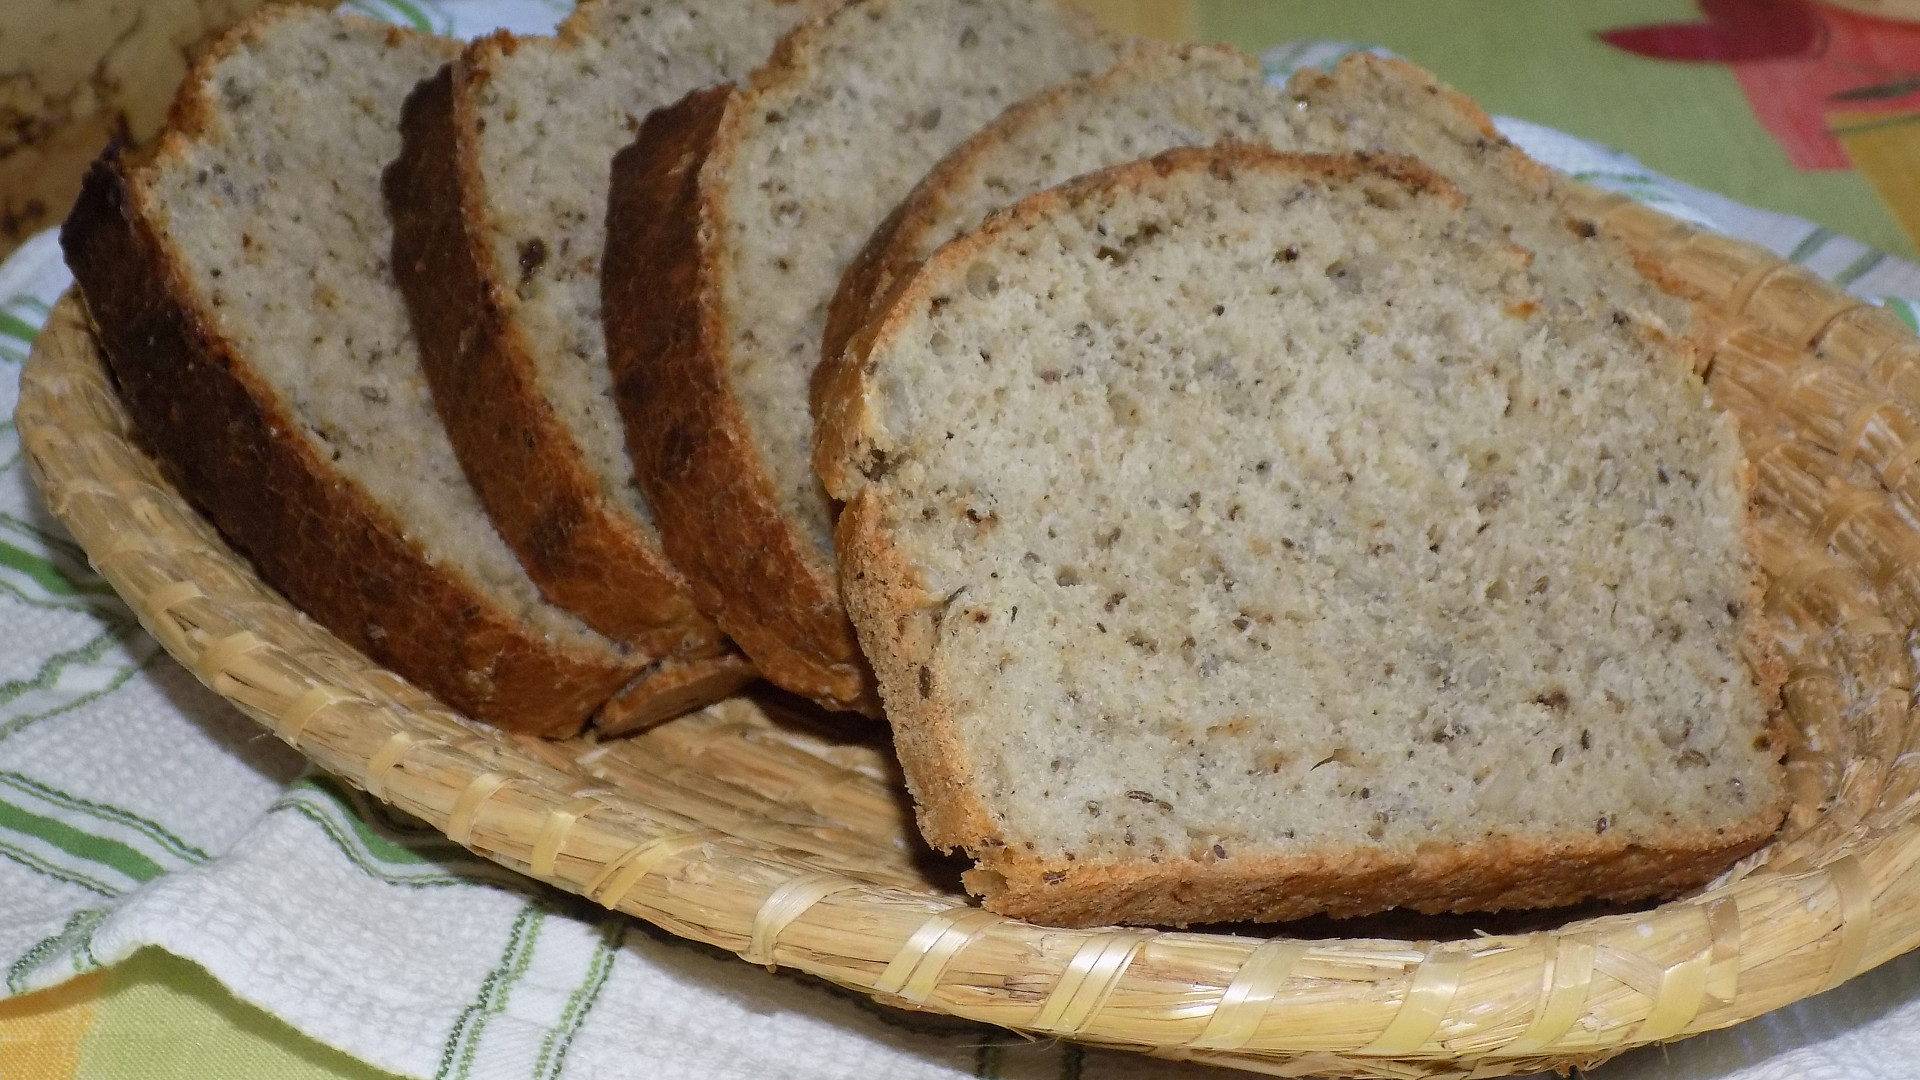 Pšenično - žitný chléb se sušenými houbami